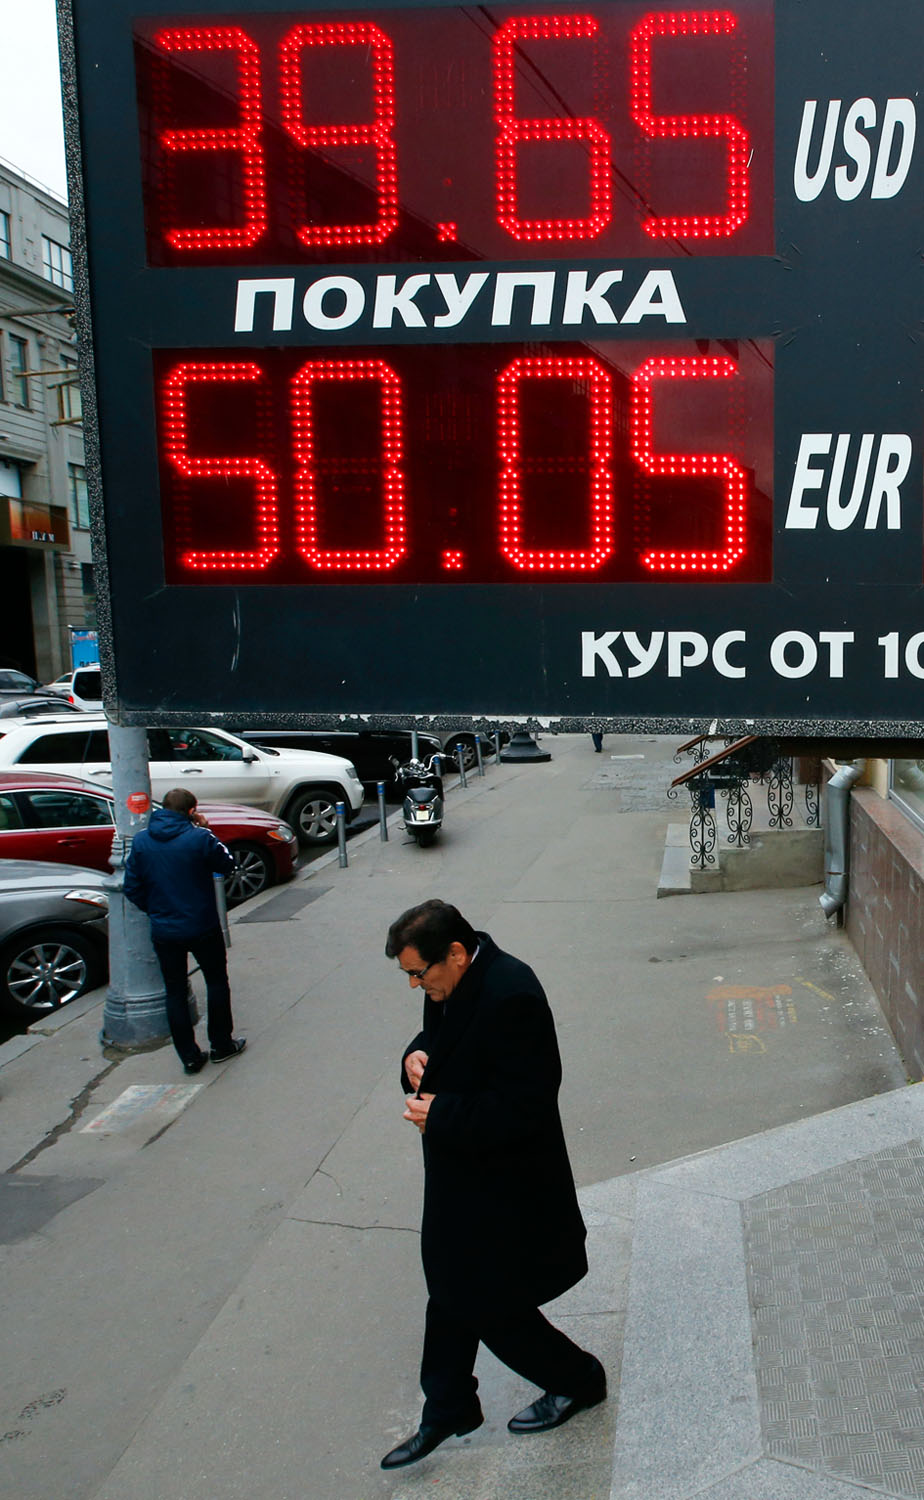 Az orosz jegybank már októberben 30 milliárd dollárt költött a rubel árfolyamzuhanásának fékezésére